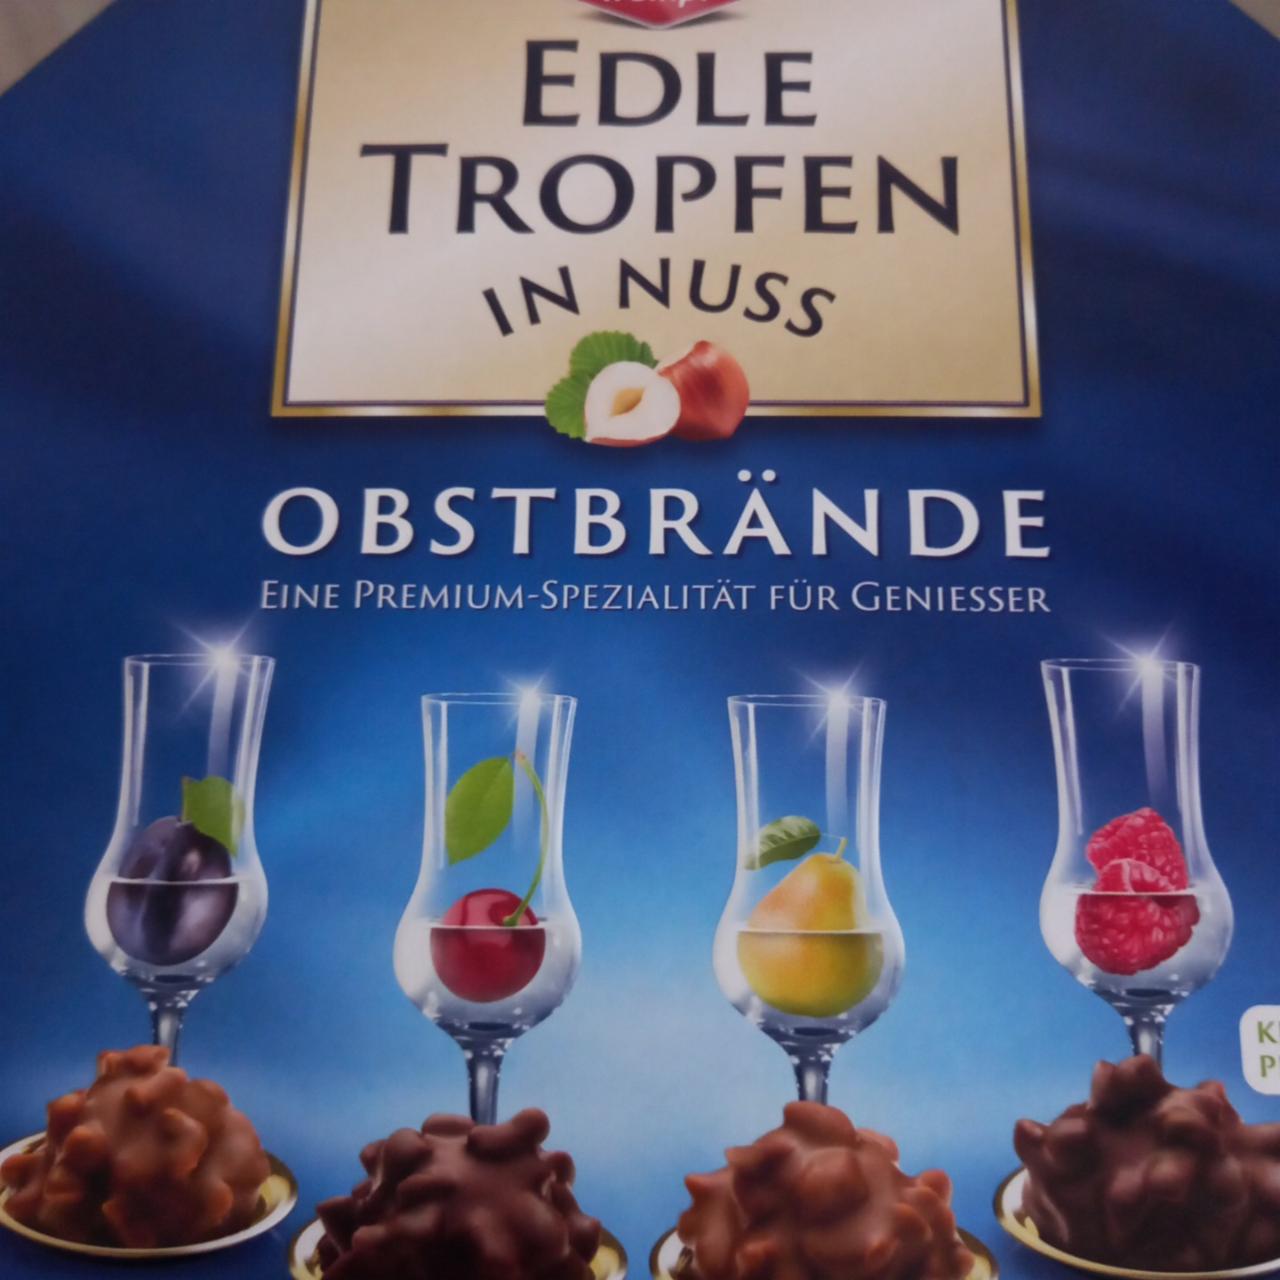 Фото - конфеты с фруктовым бренди эдле Edle Tropfen in nuss Trumpf